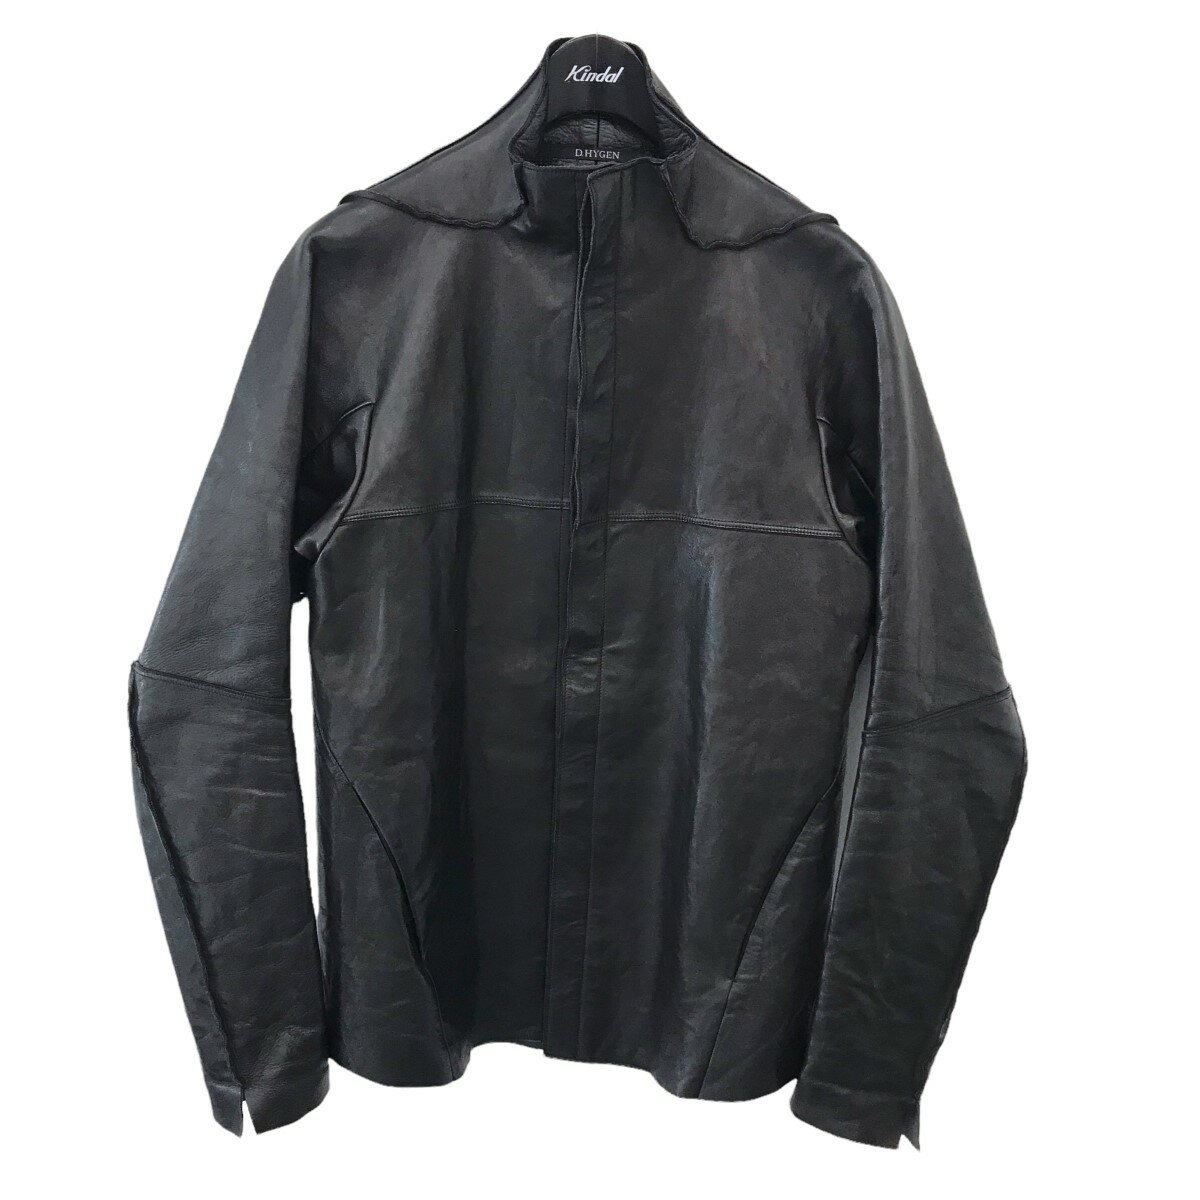 トップス, カジュアルシャツ DHYGEN 2018AW Bonding Horse Leather Shirt 2 060622